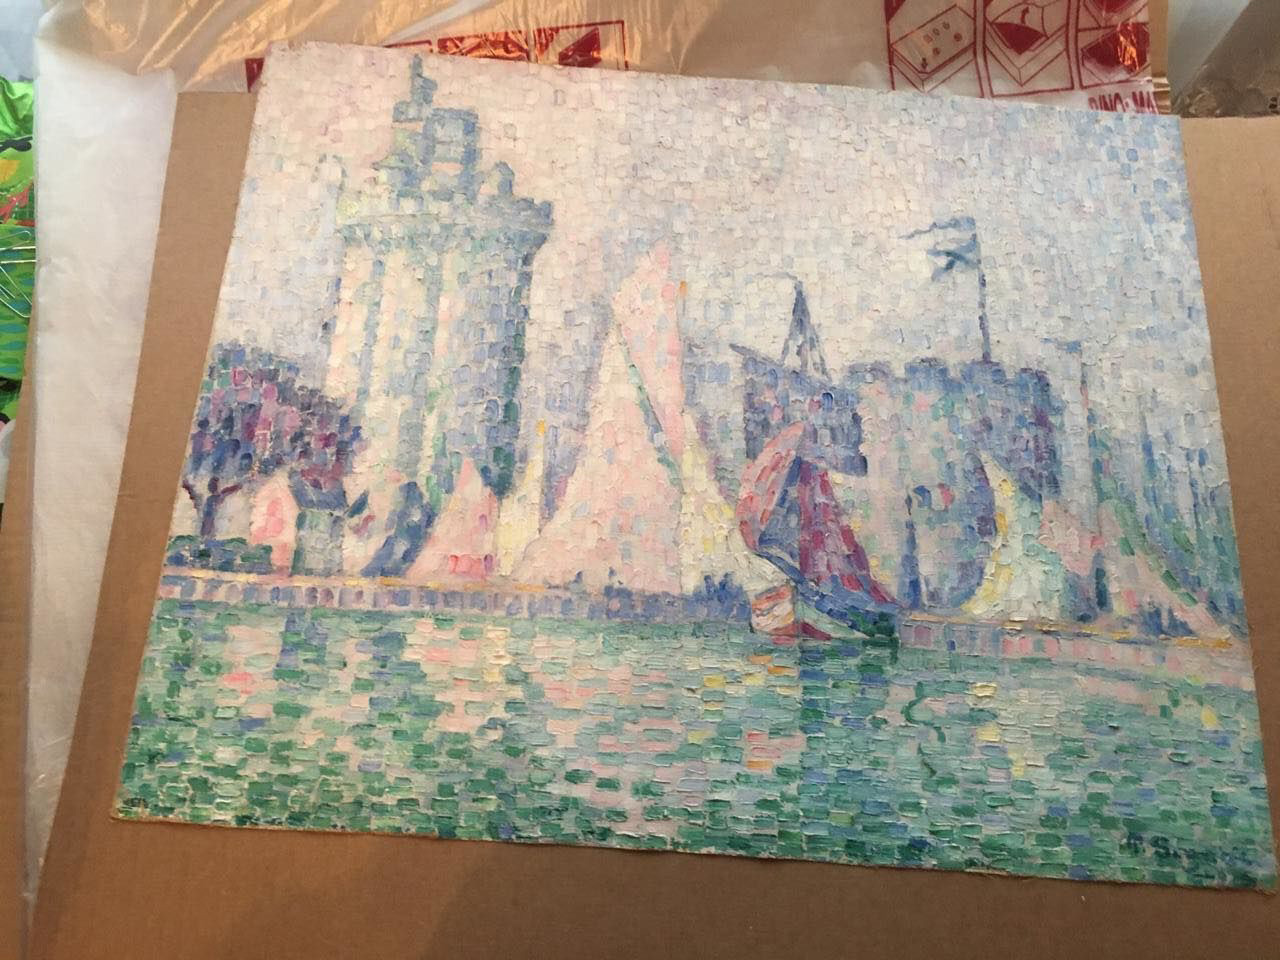 Картину під назвою «Порт Ла-Рошель» викрали з музею в місті Нансі і тепер вона повернеться на батьківщину. Фото: главное